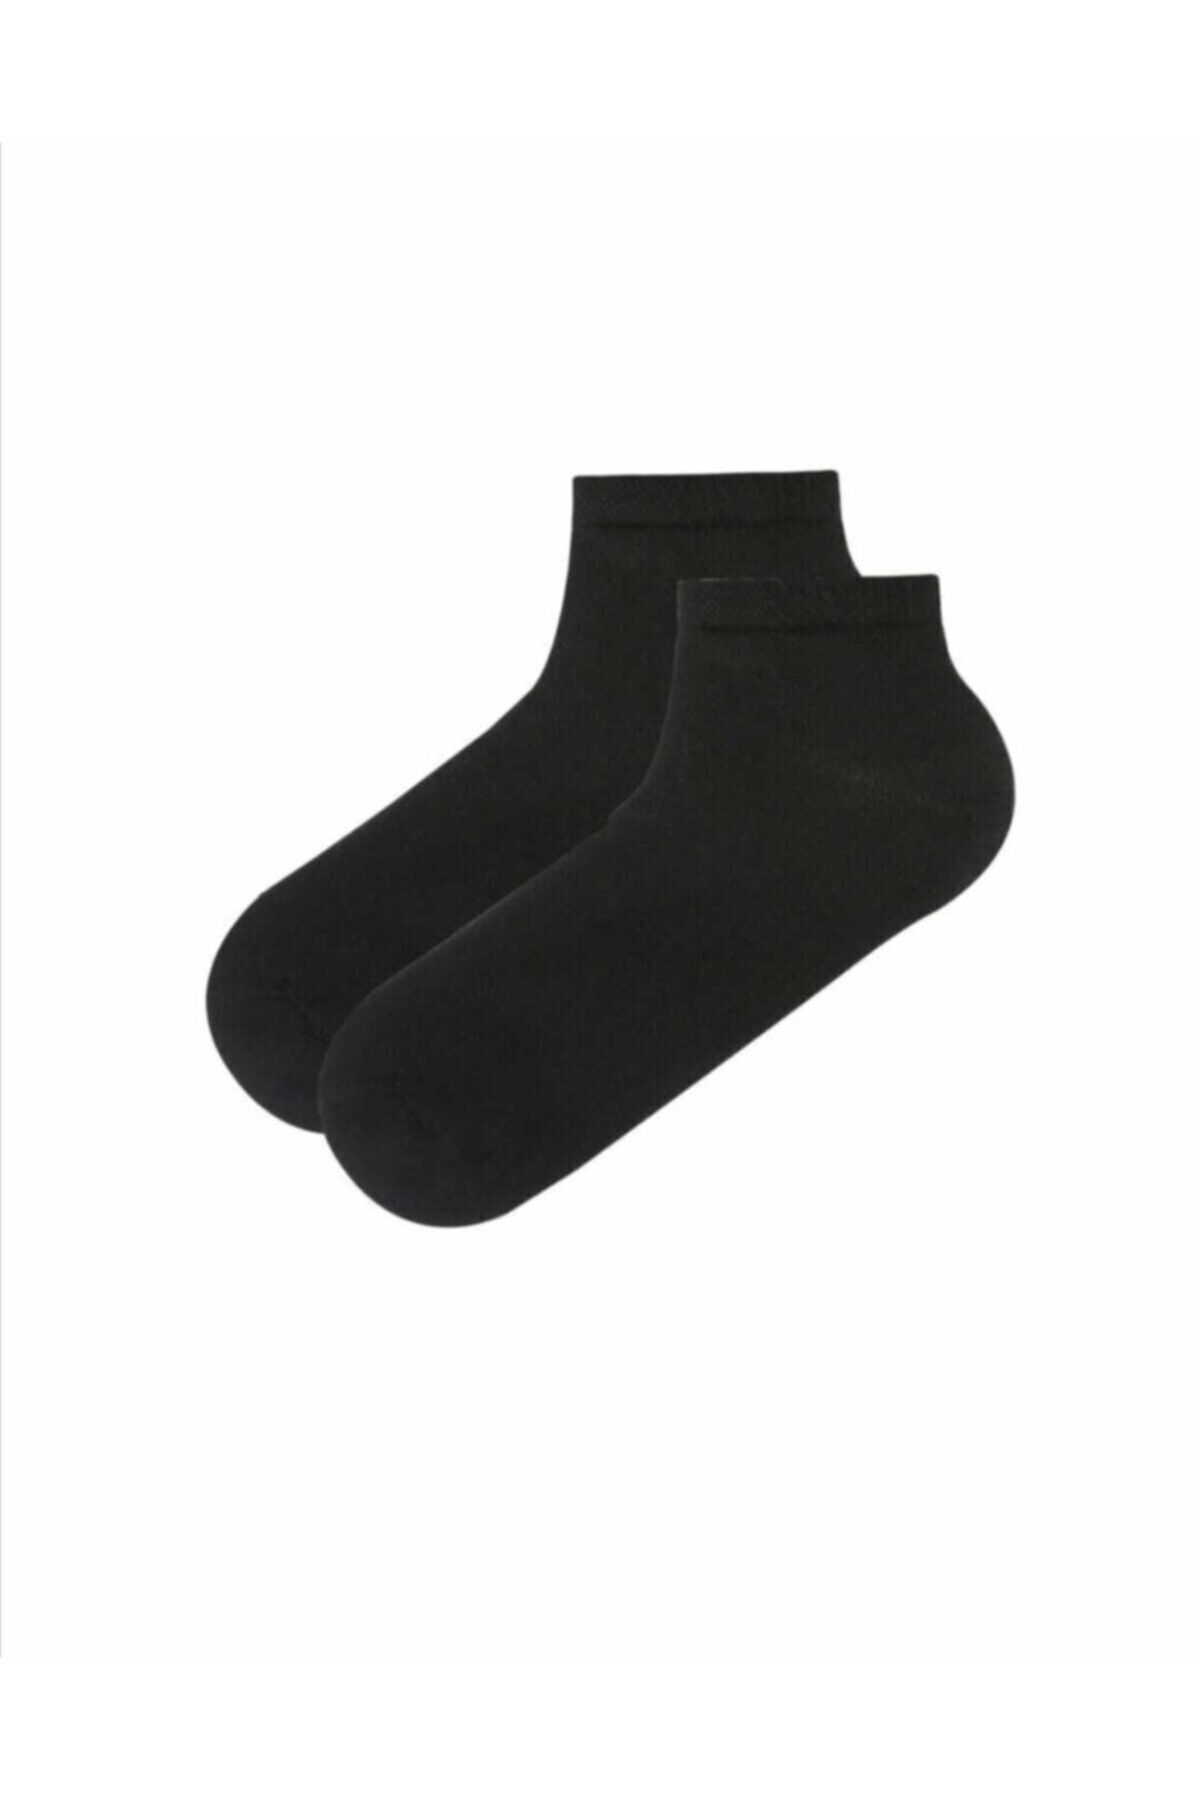 Gezen Çorap Konclu Cok Renkli Patik Corap 12 Cift